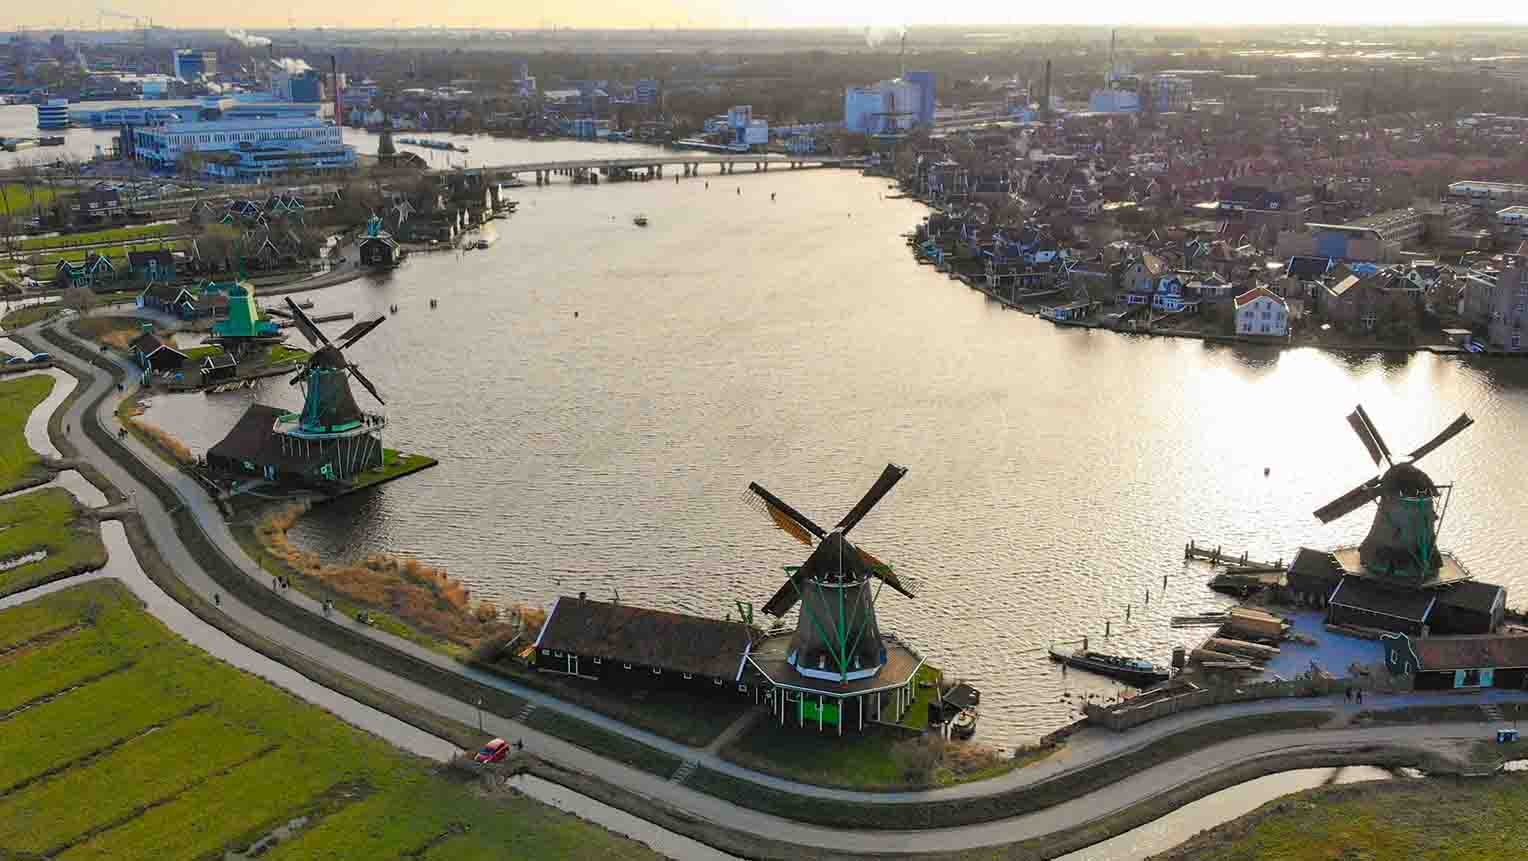 Zaanse schans; Netherlands postcard village